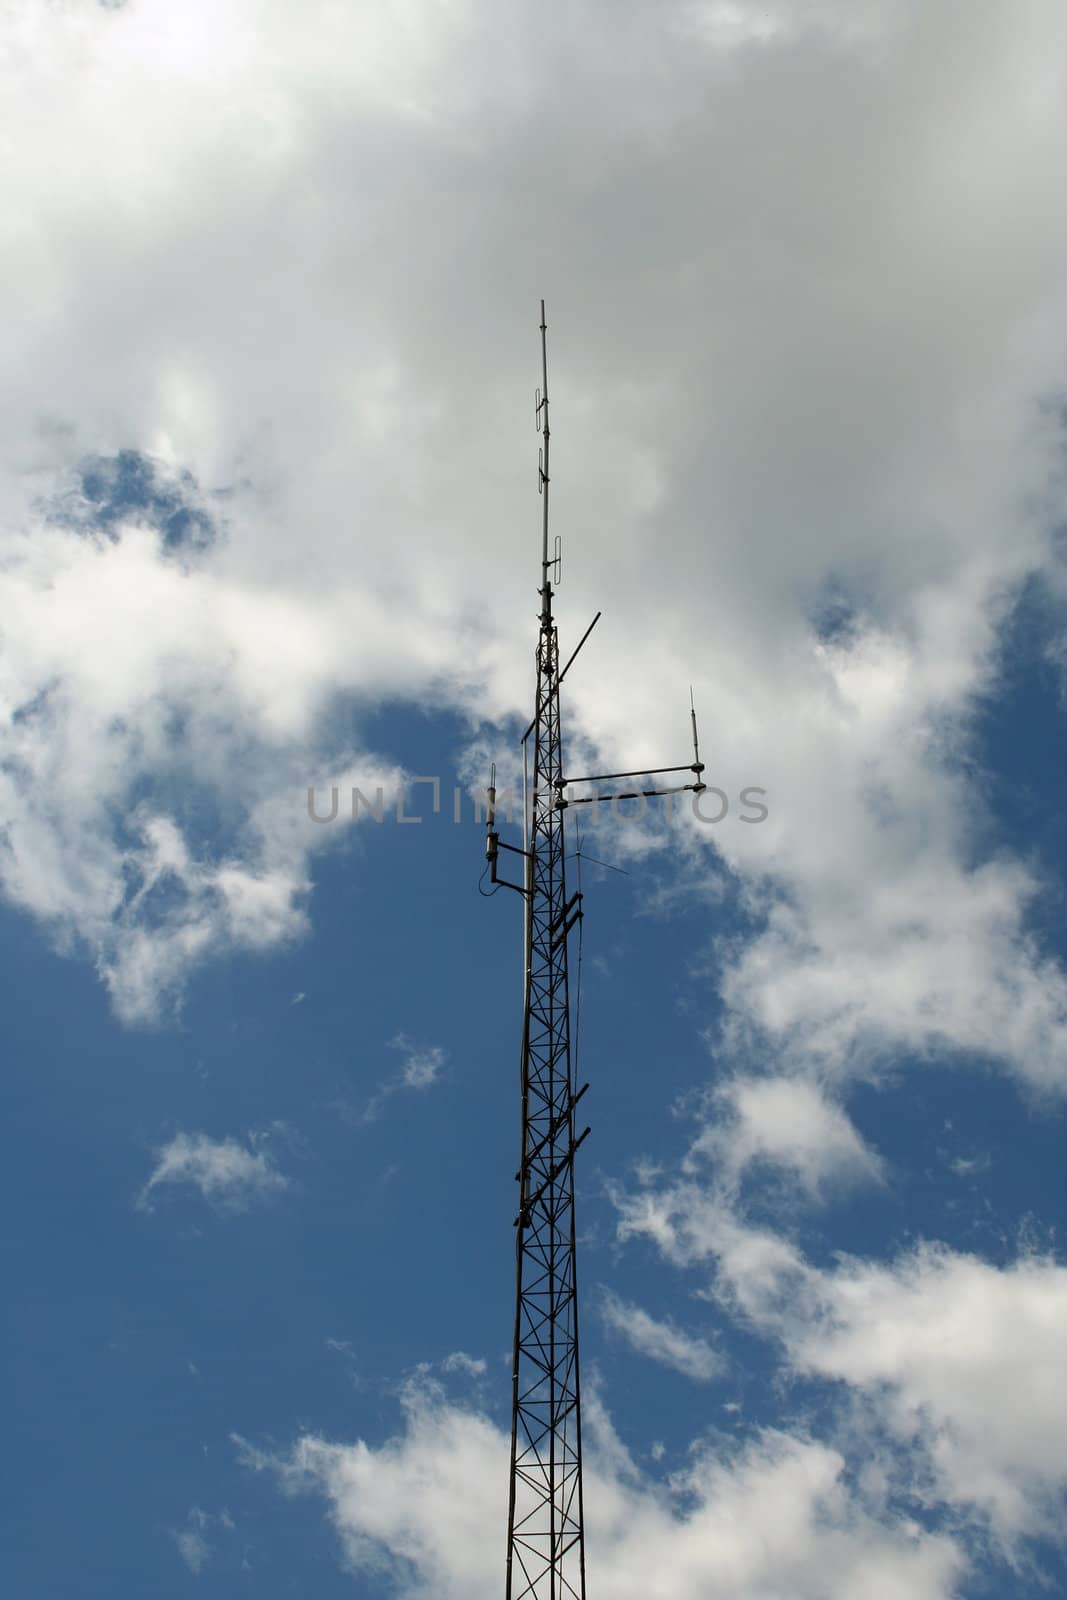 Radio antenna by njnightsky